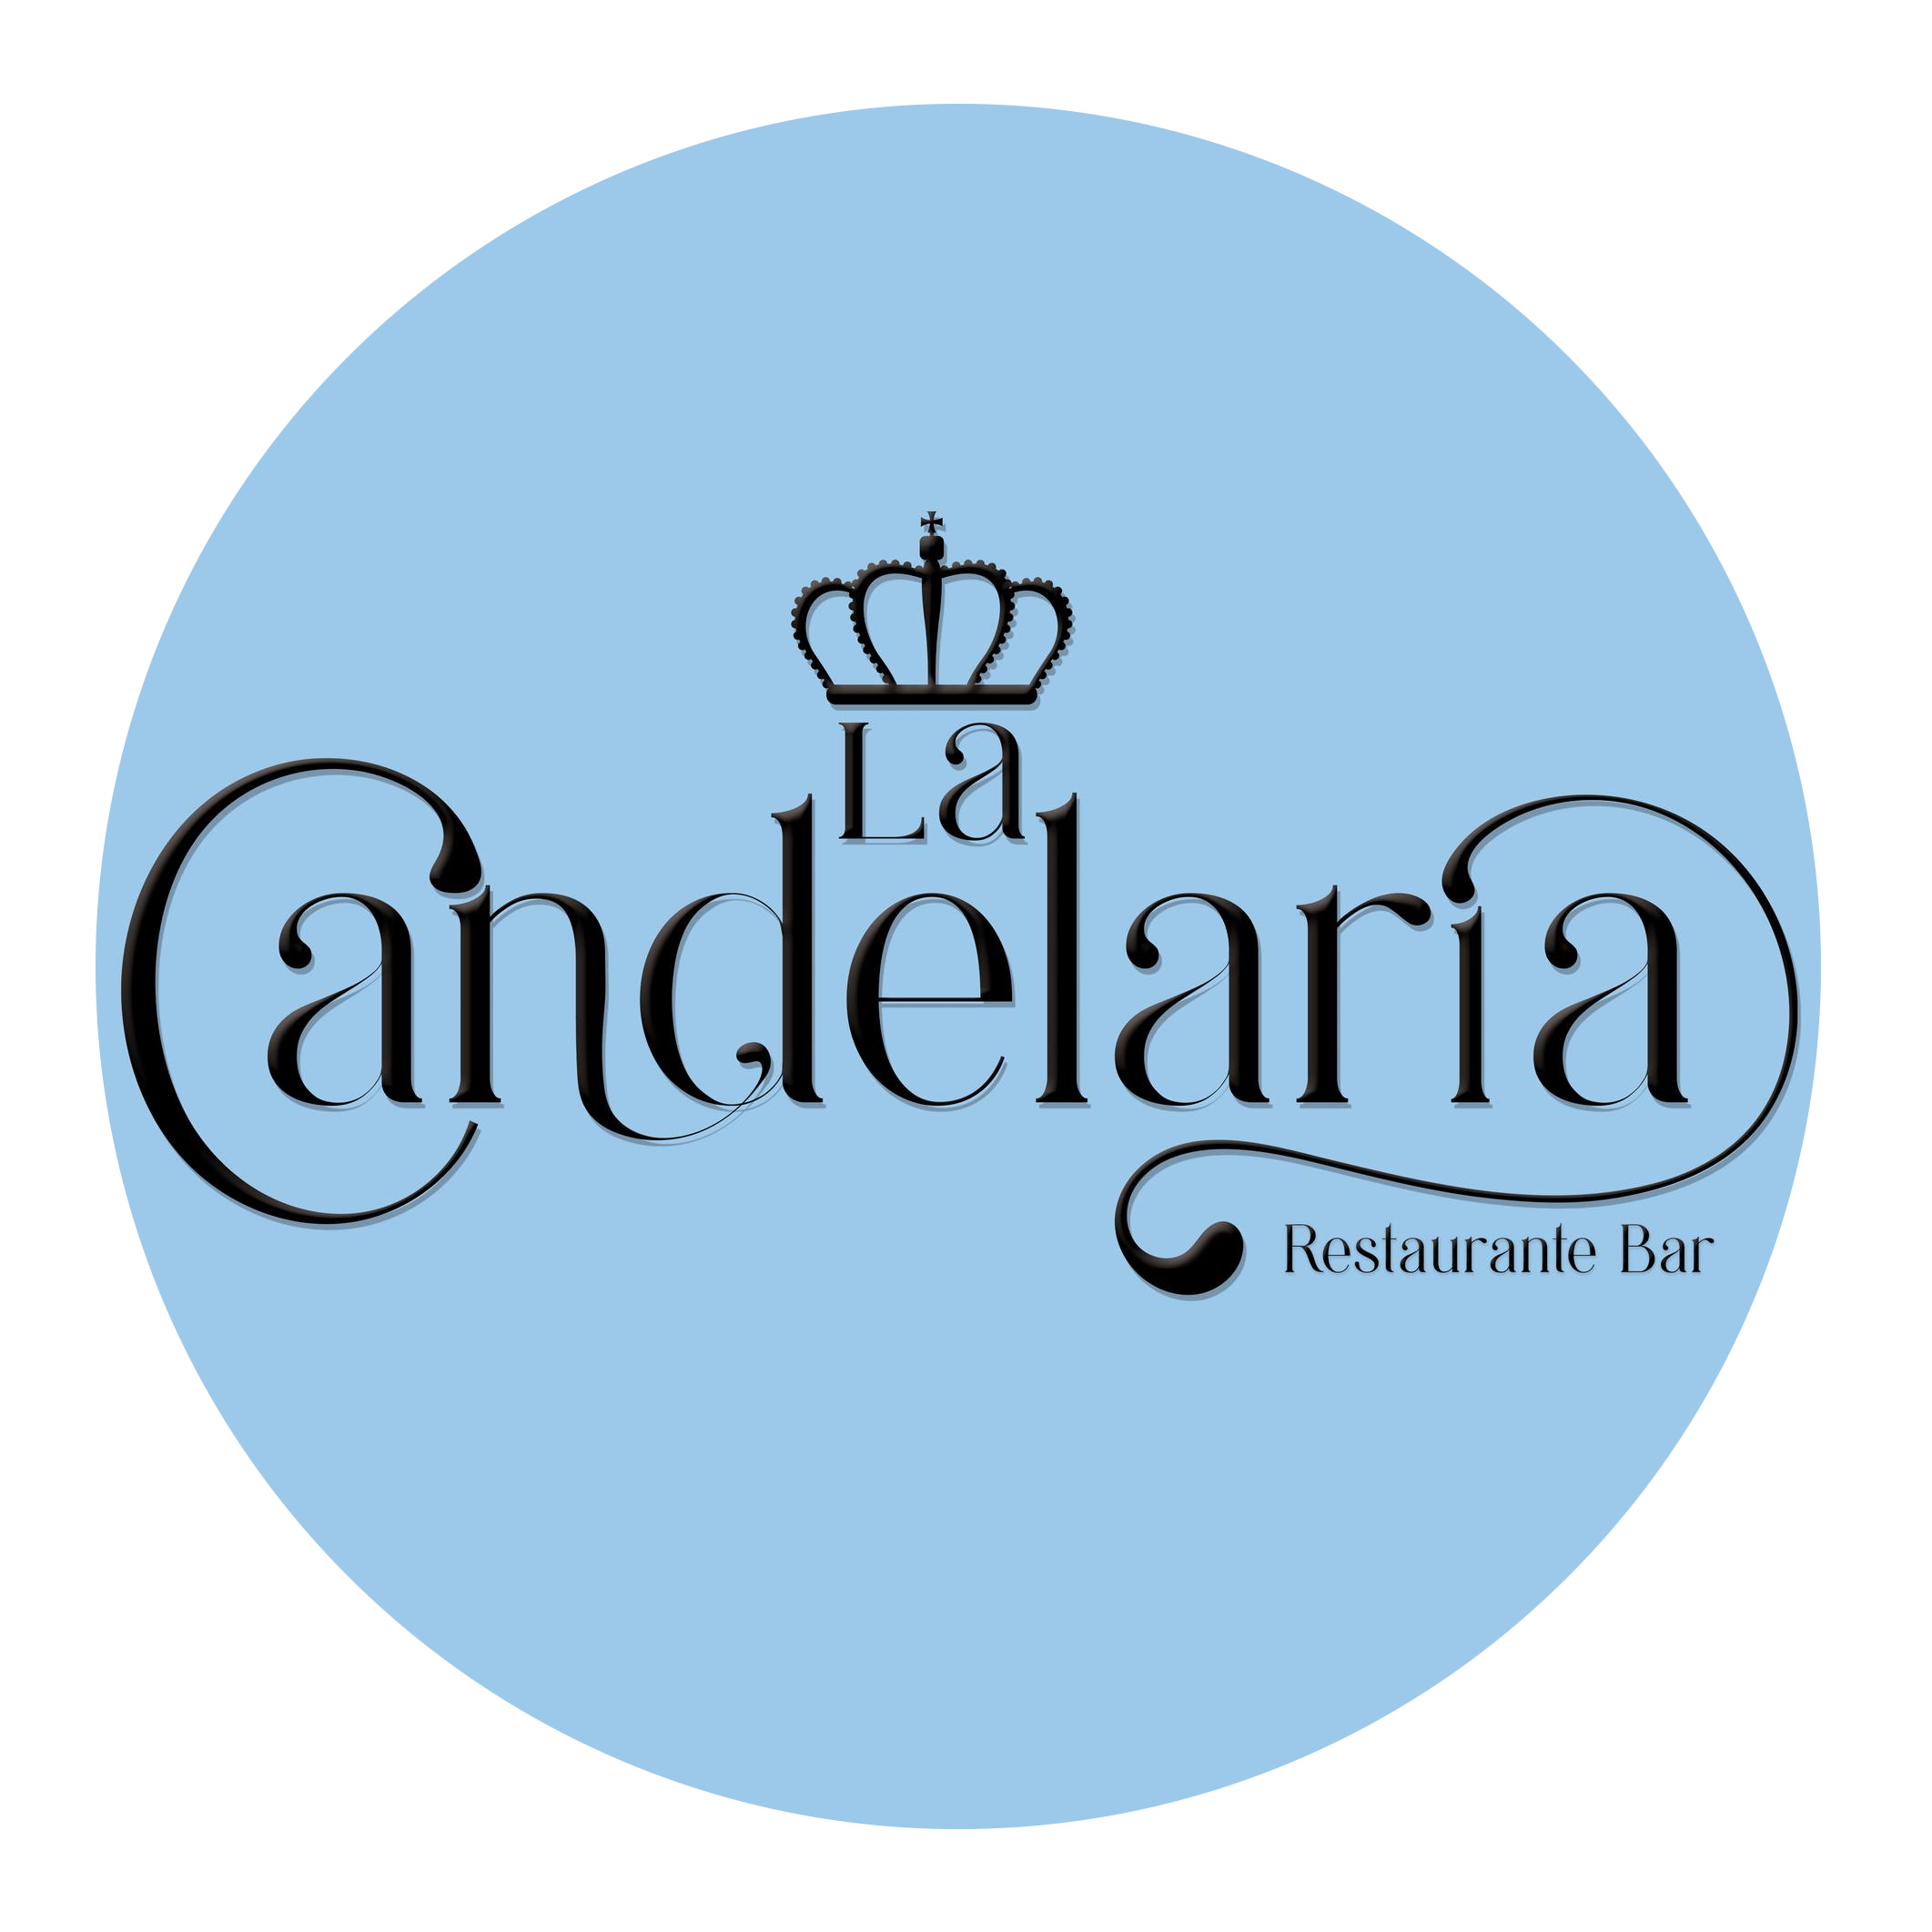 La Candelaria Restaurante Bar